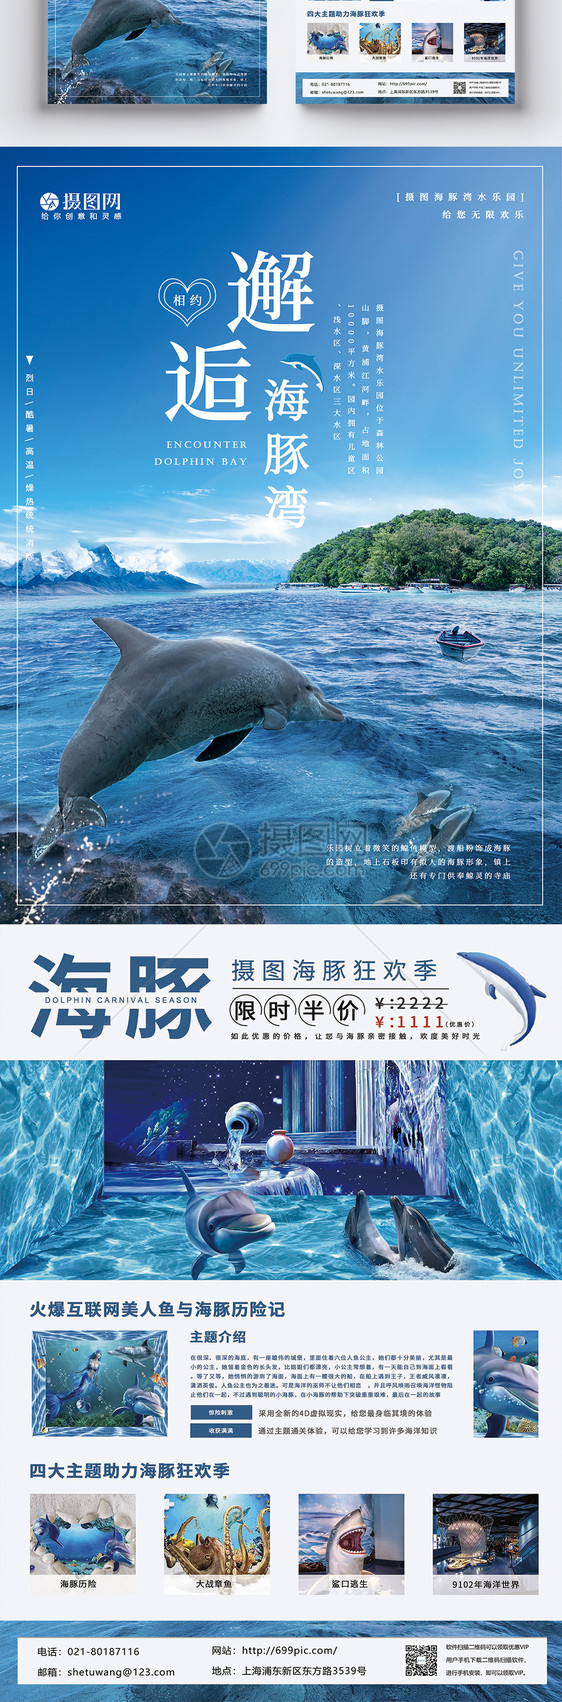 蓝色海豚乐园宣传单图片